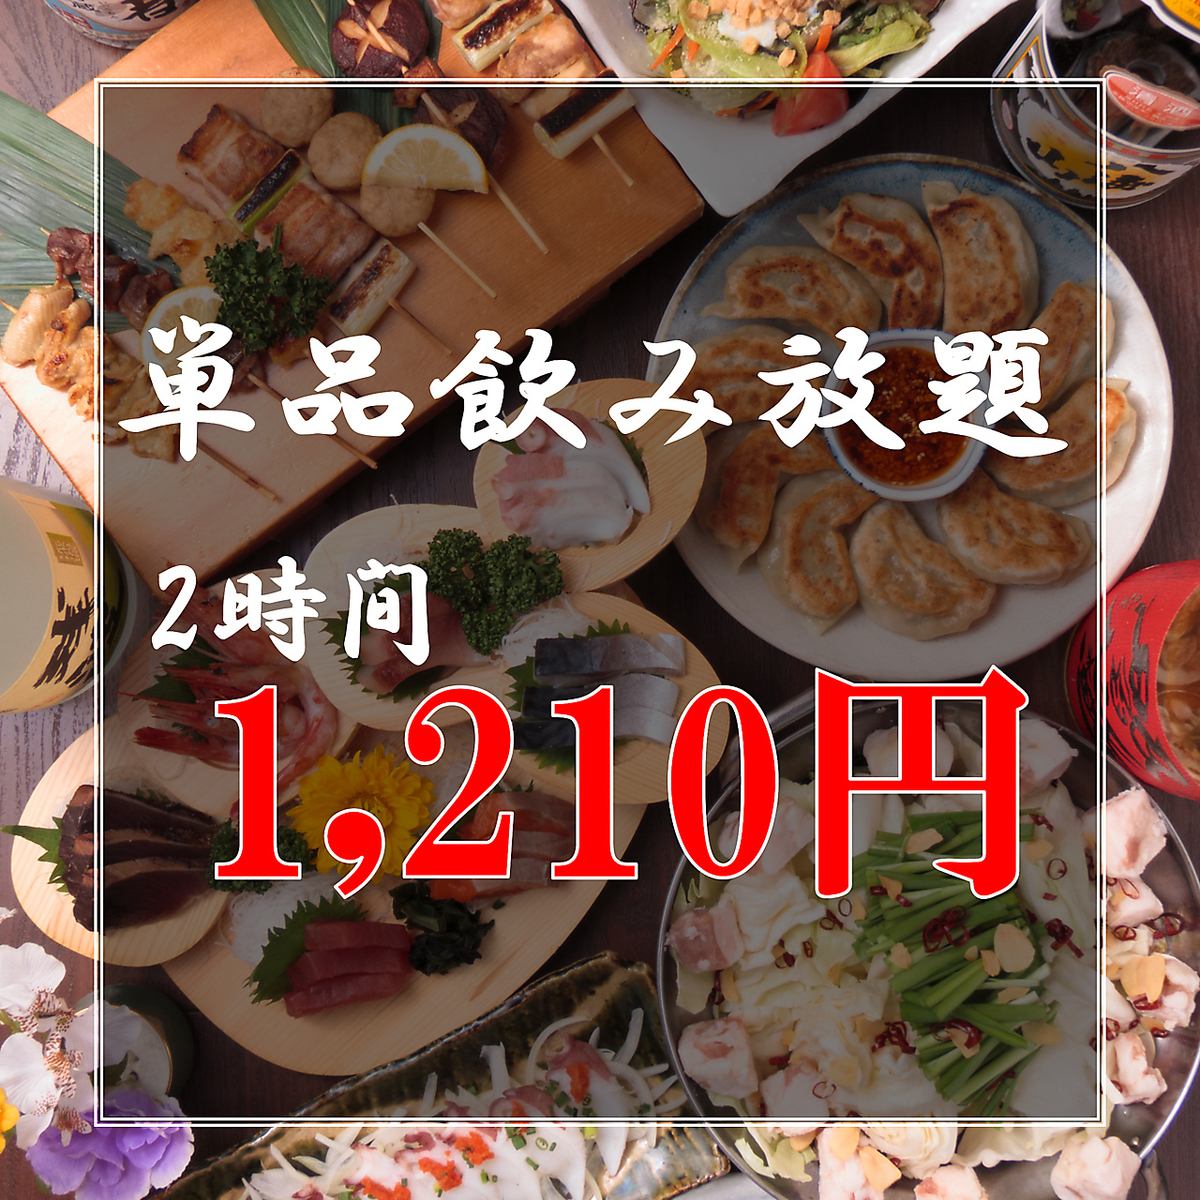 歡迎午餐！限時2小時無限暢飲1,210日元！